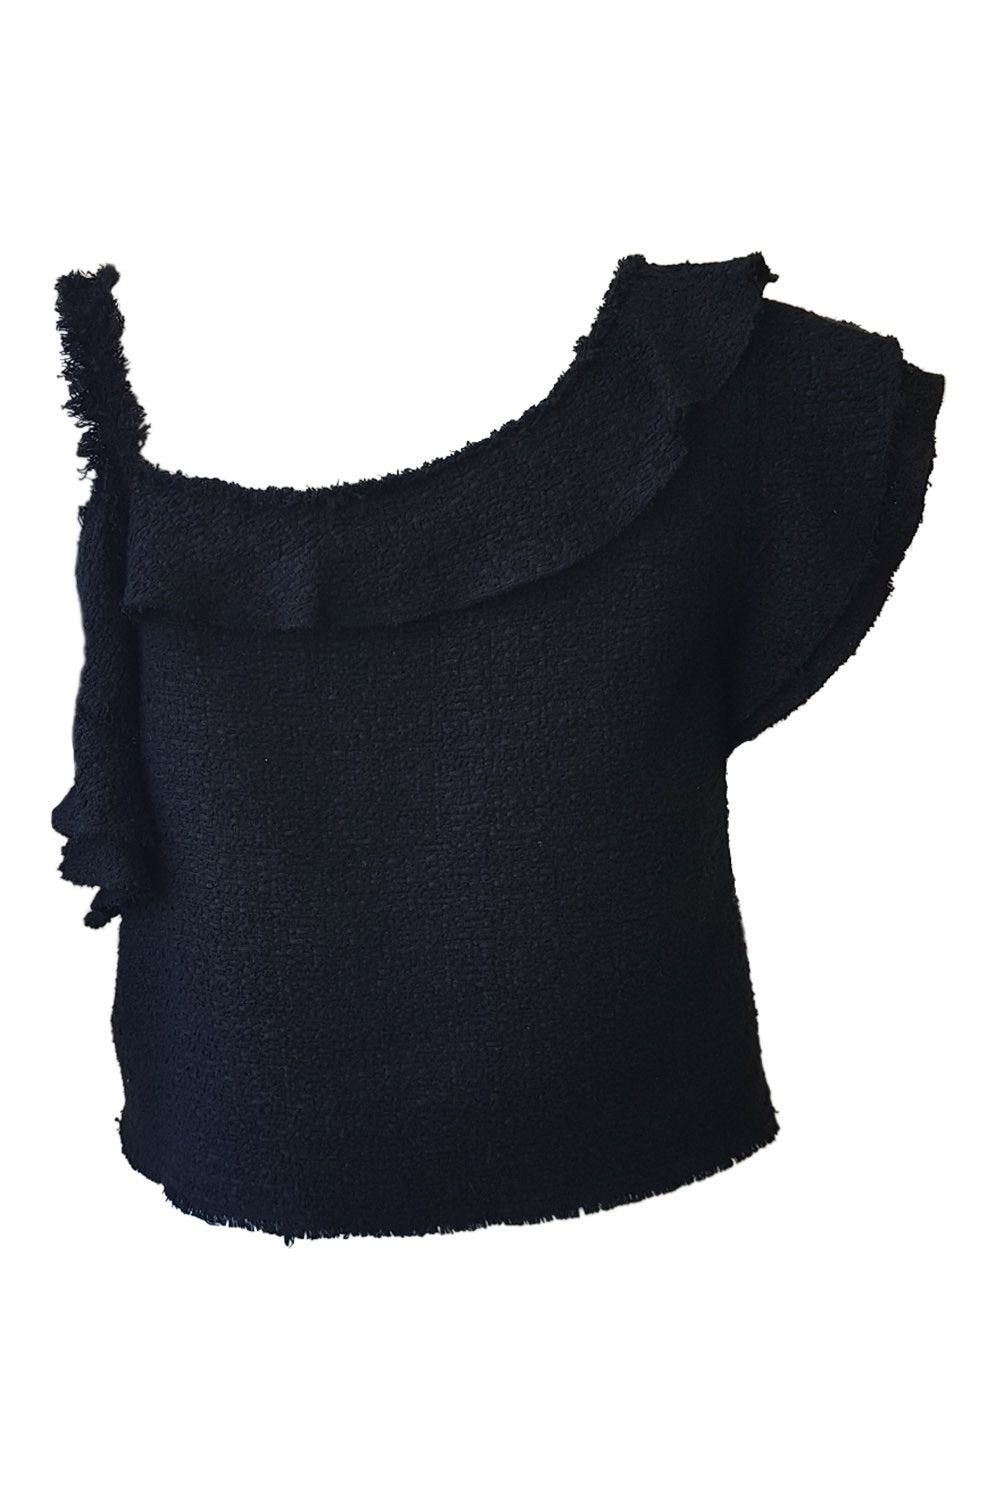 PROENZA SCHOULER Black Tweed Crop Top (UK 6)-Proenza Schouler-The Freperie